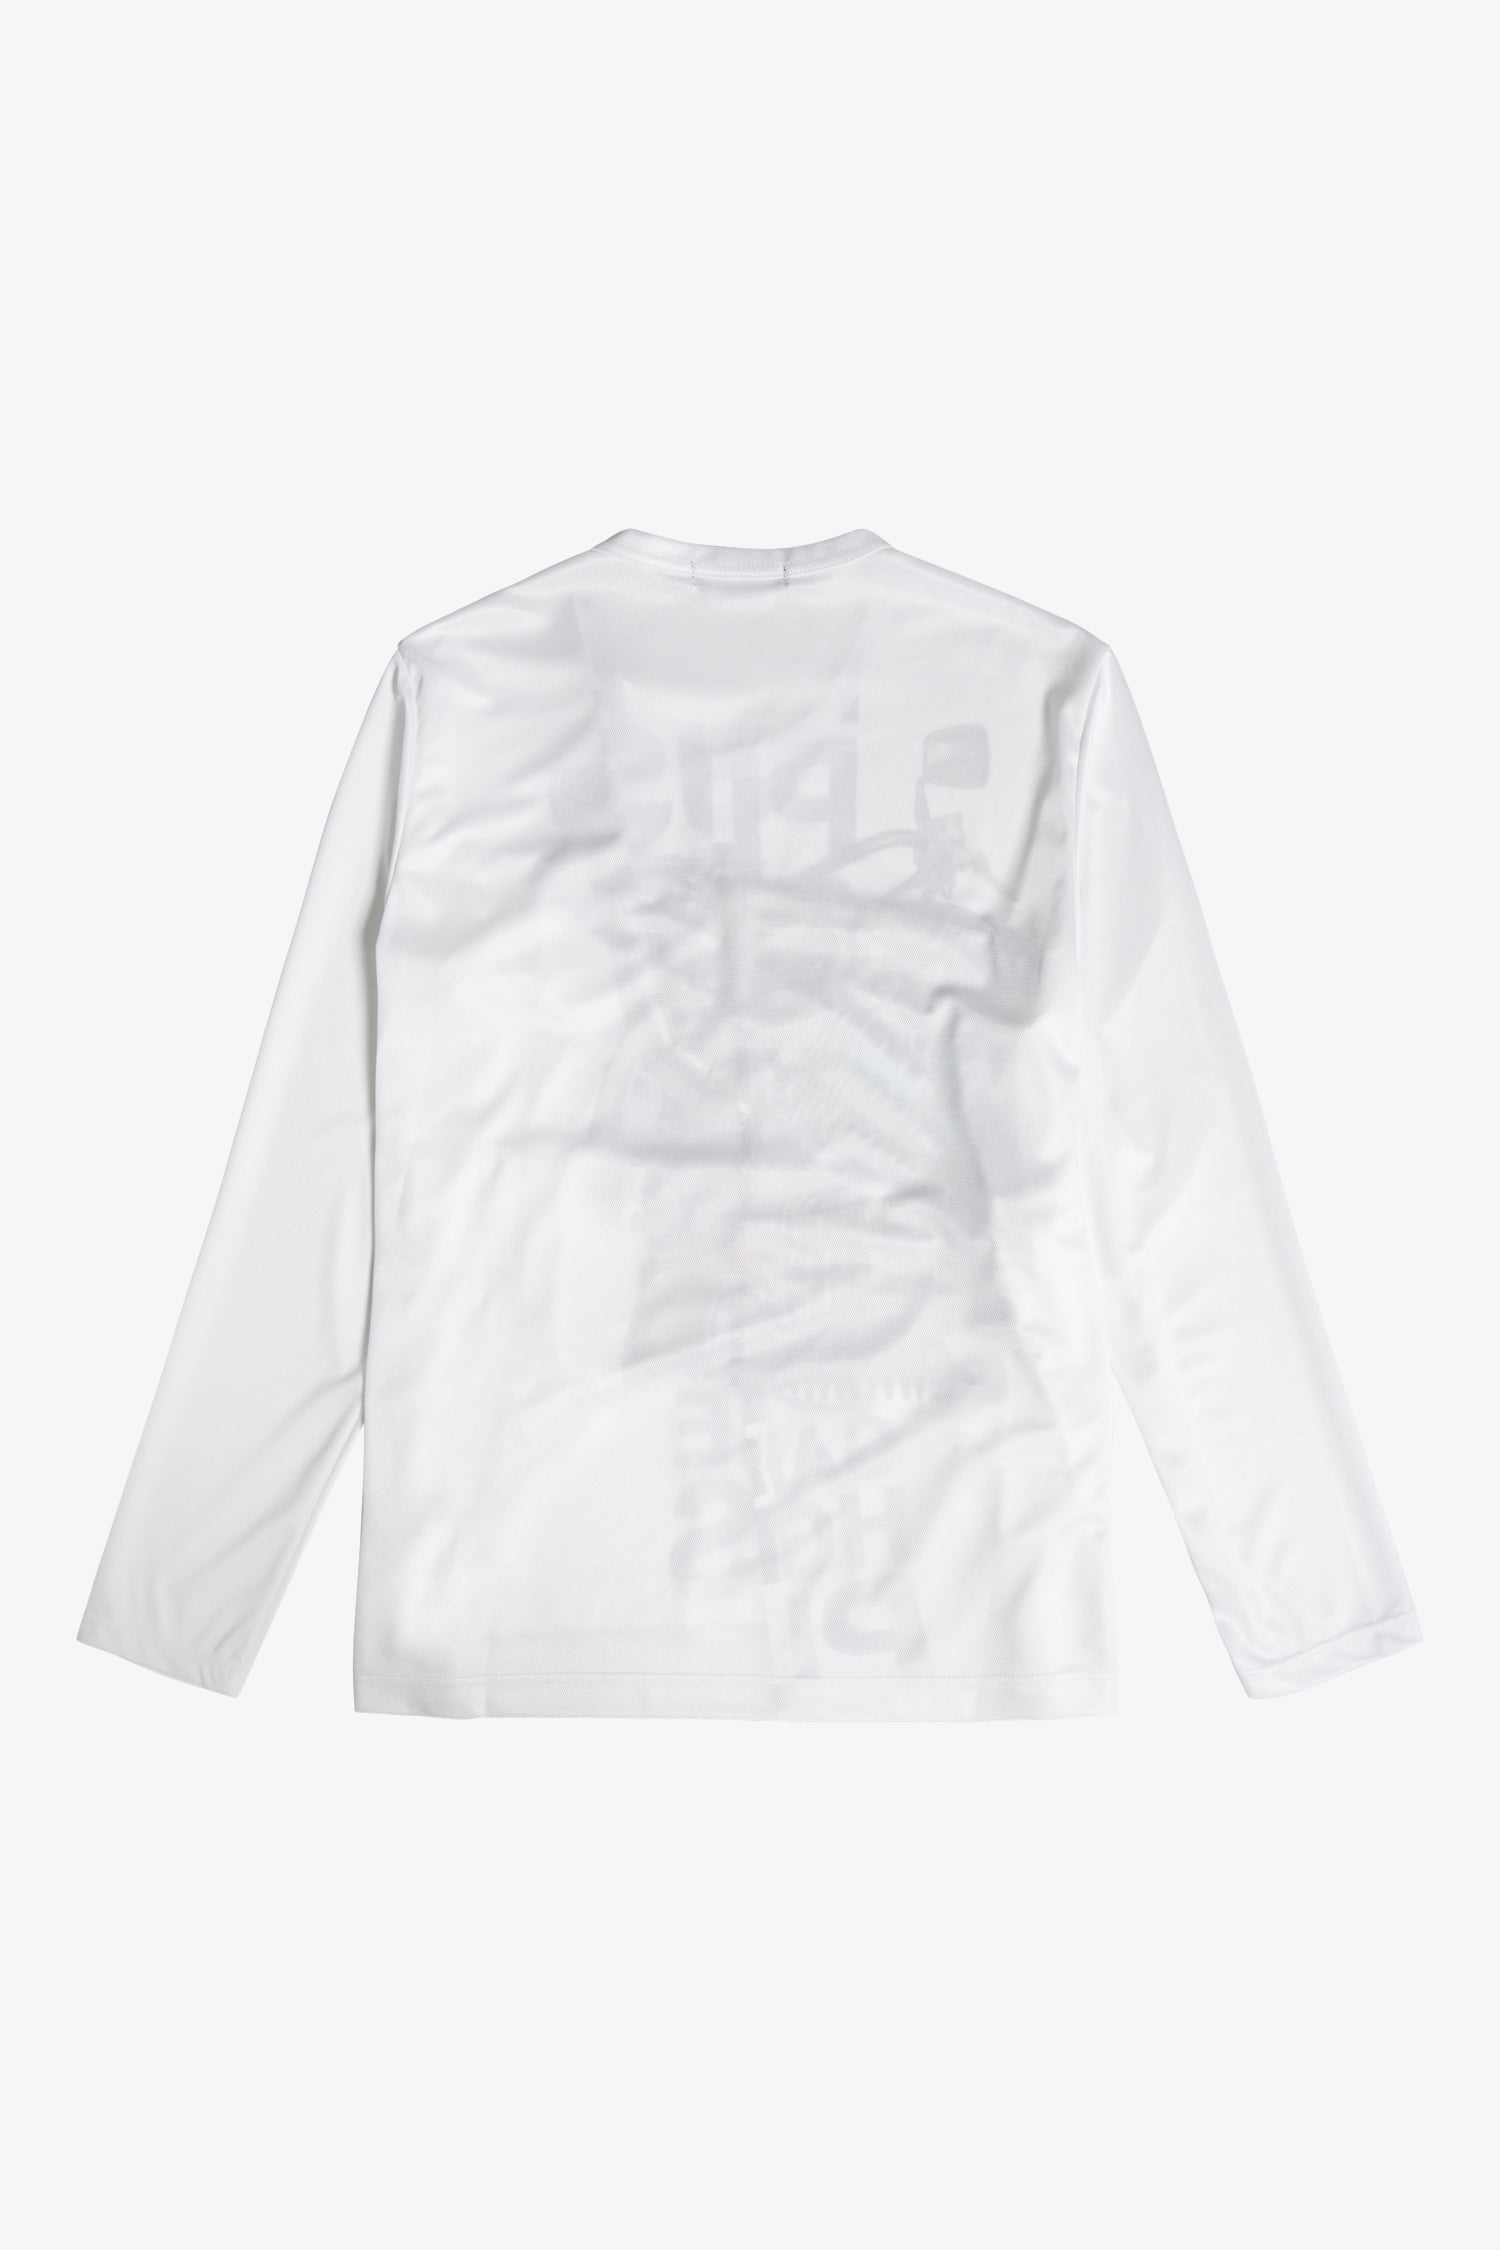 Selectshop FRAME - COMME DES GARÇONS HOMME PLUS Deconstructed Mesh Long-Sleeve T-Shirt T-shirt Dubai